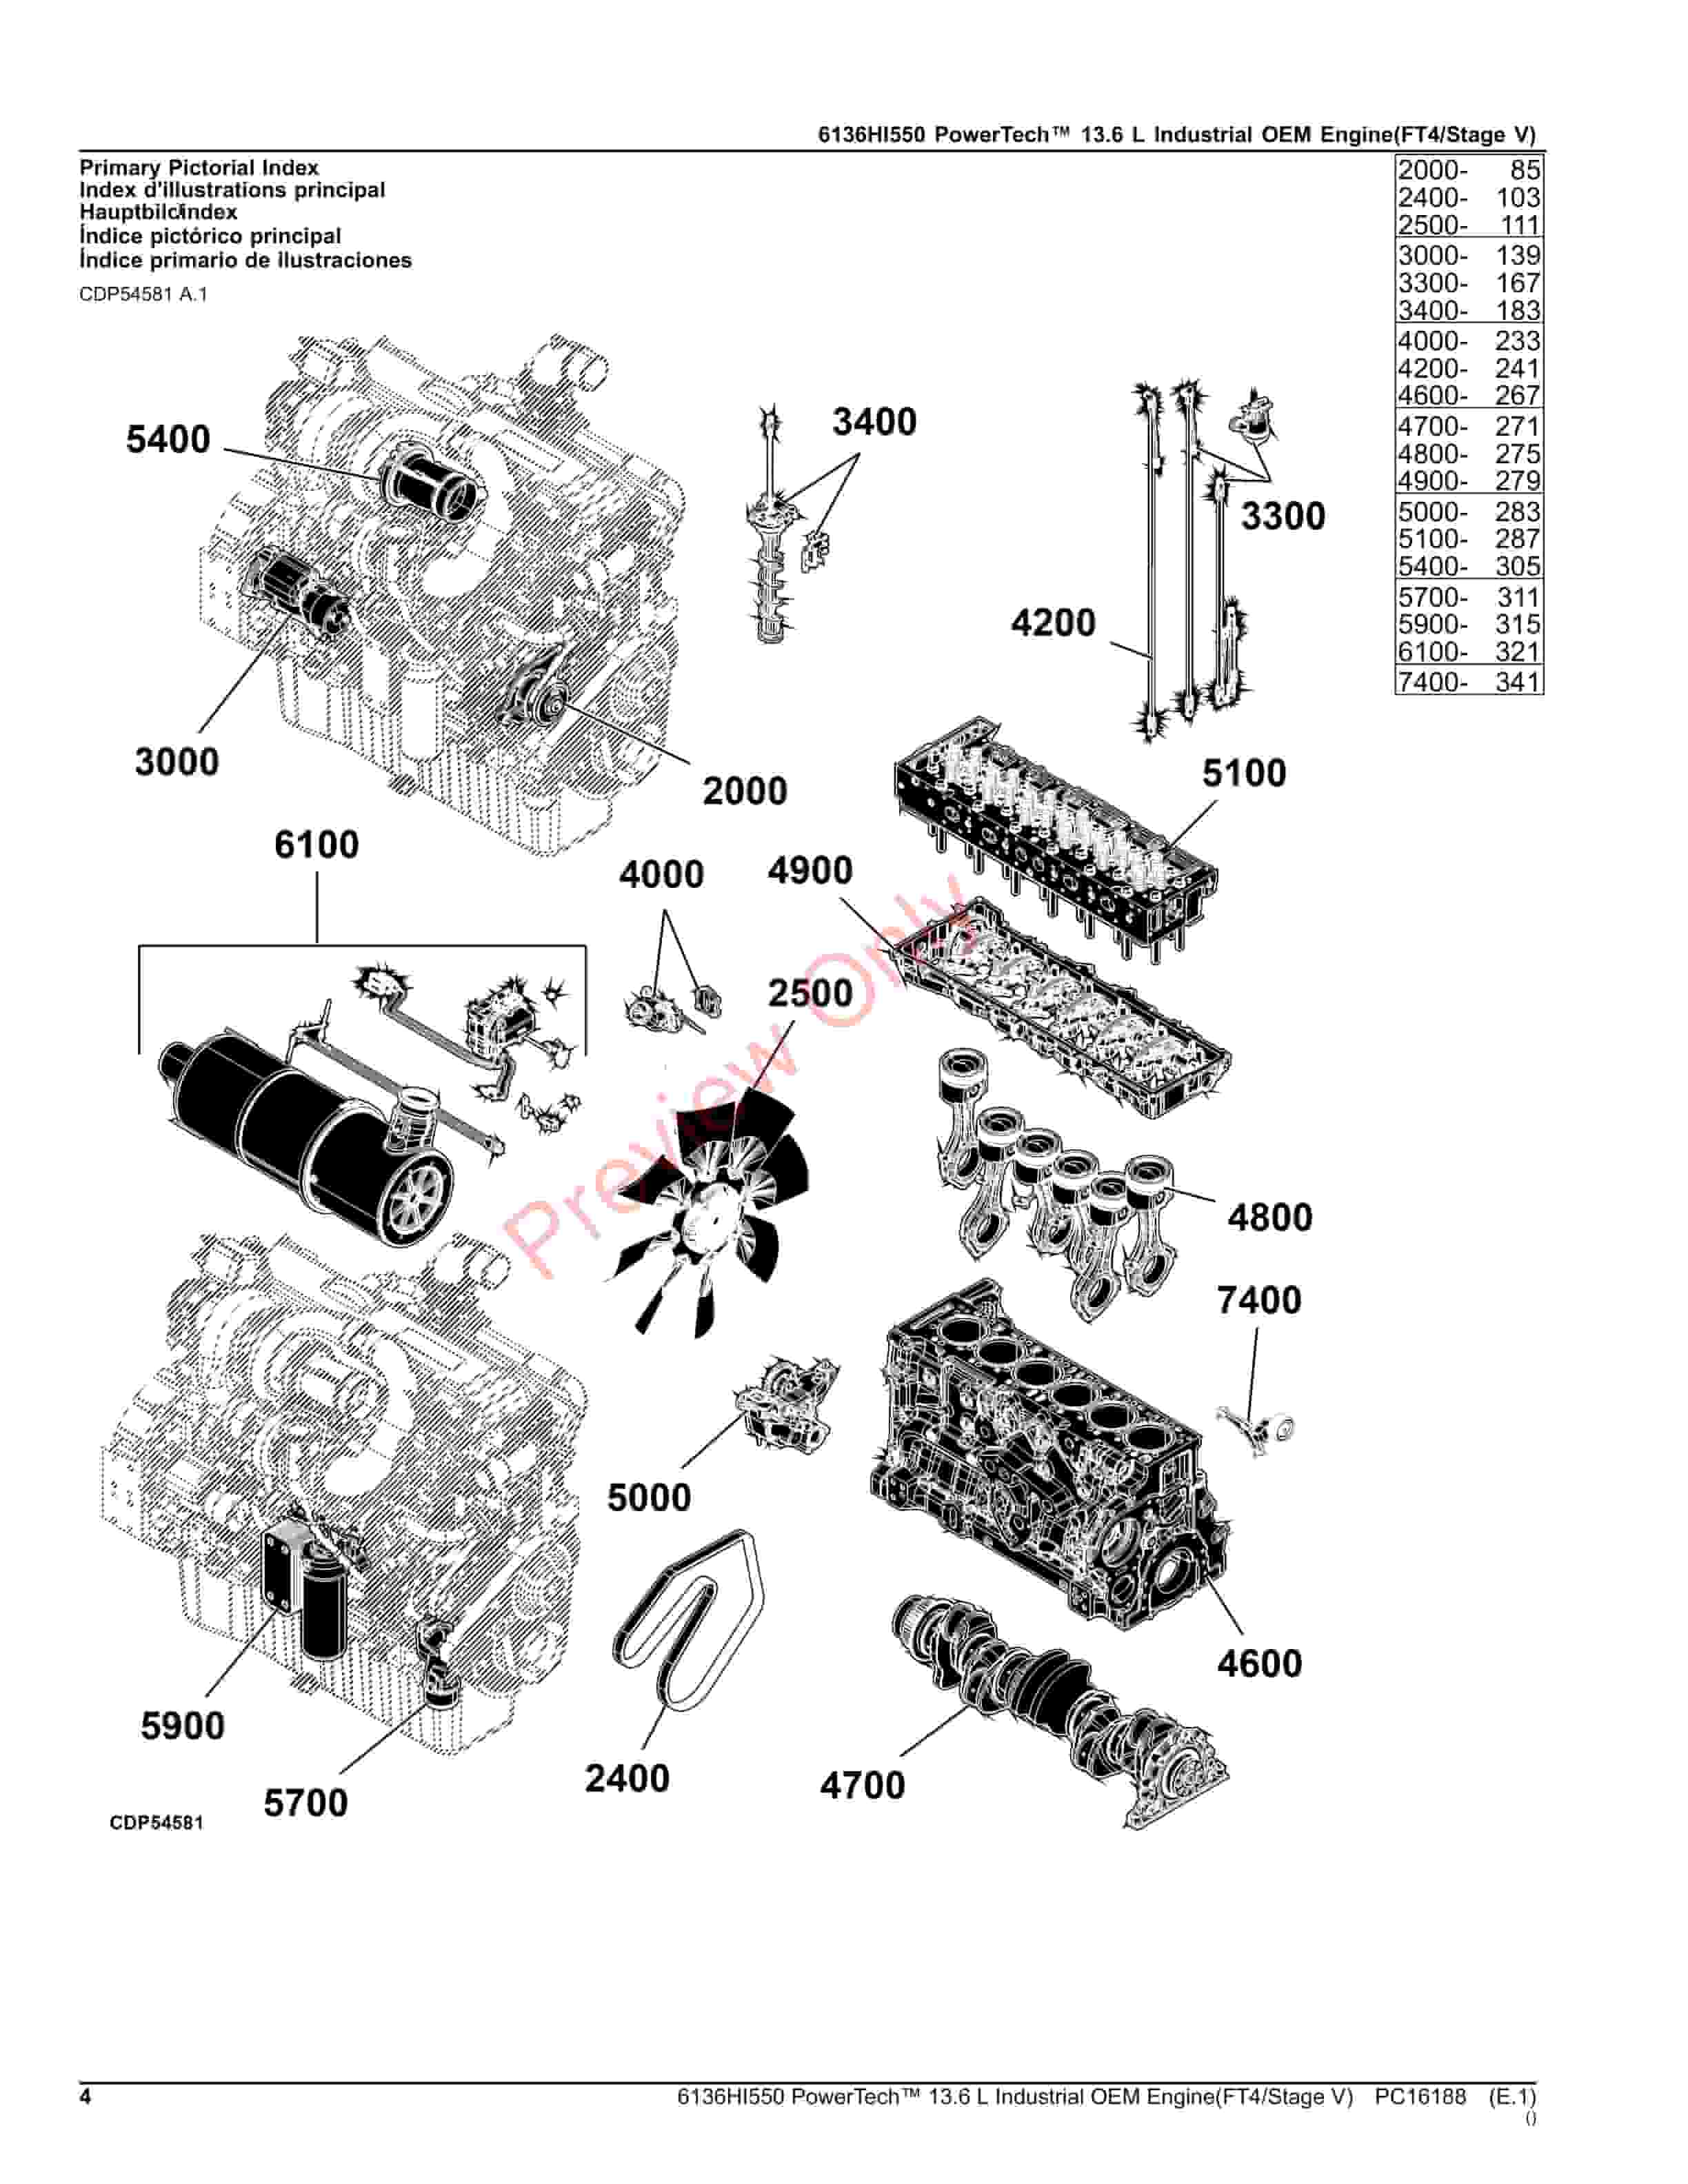 John Deere 6136HI550 PowerTech 13.6 L Industrial OEM Engine(FT4Stage V) Parts Catalog PC16188 20JUL23-4